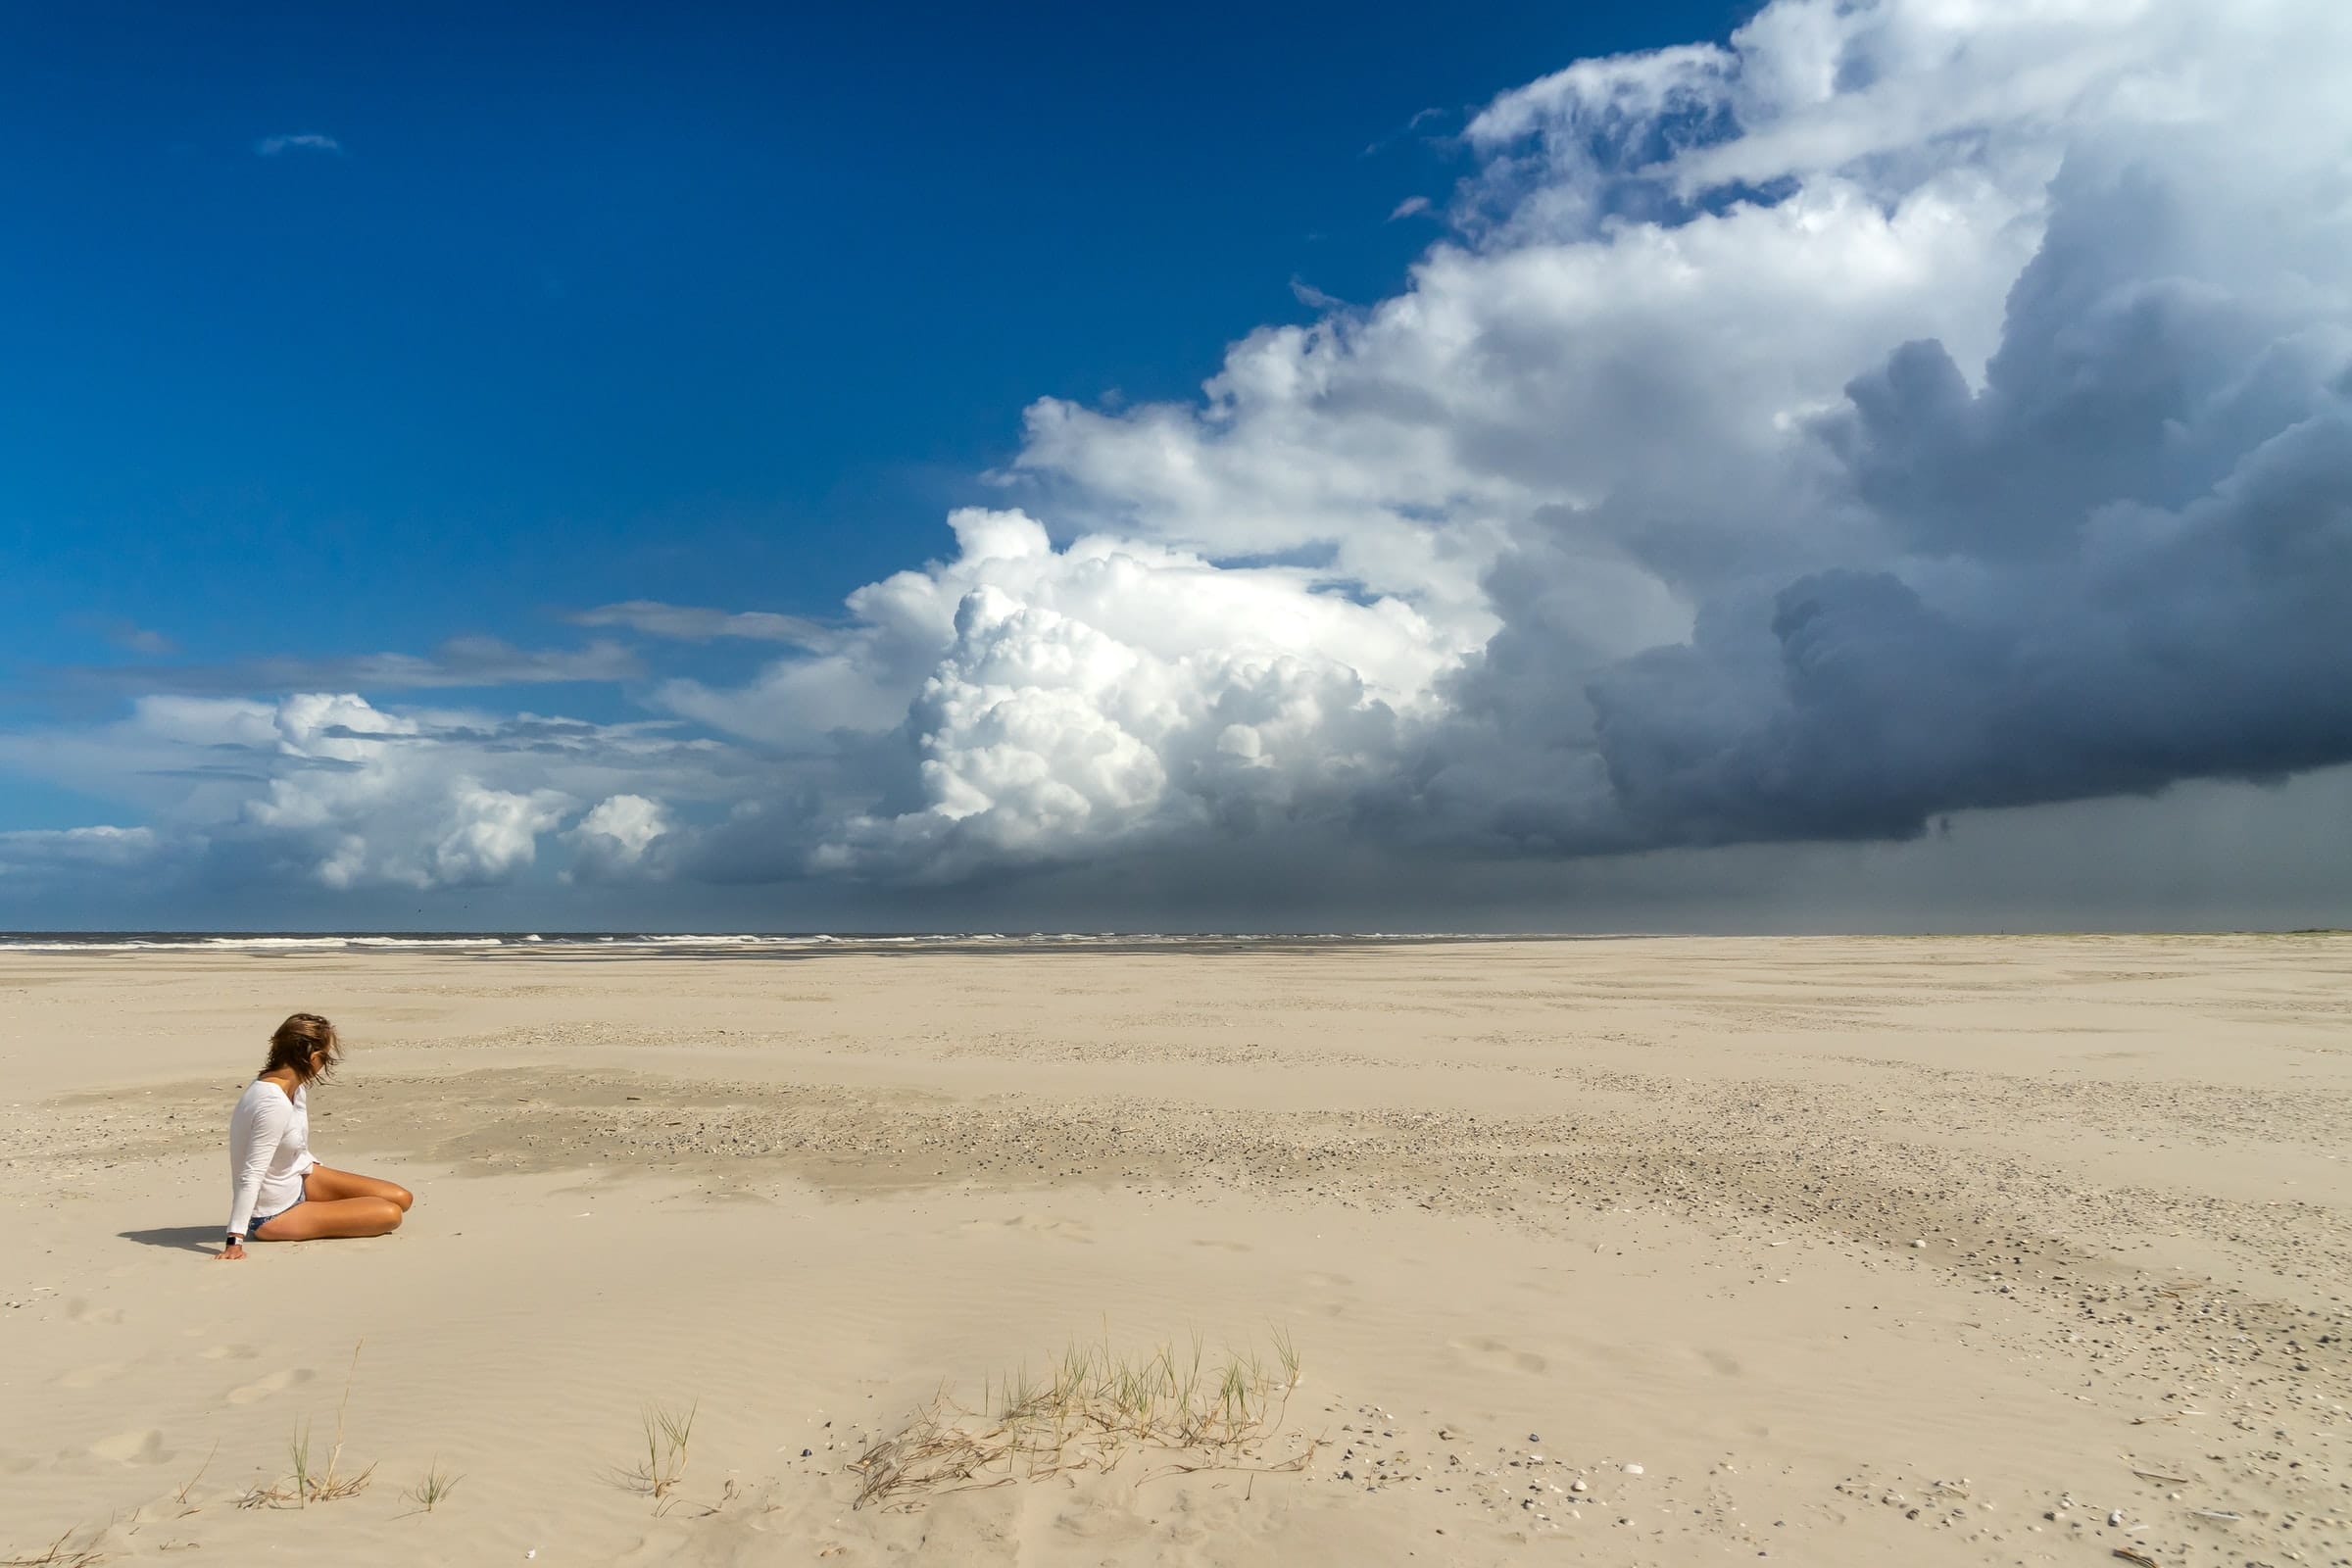 broad-beach-schiermonnikoog